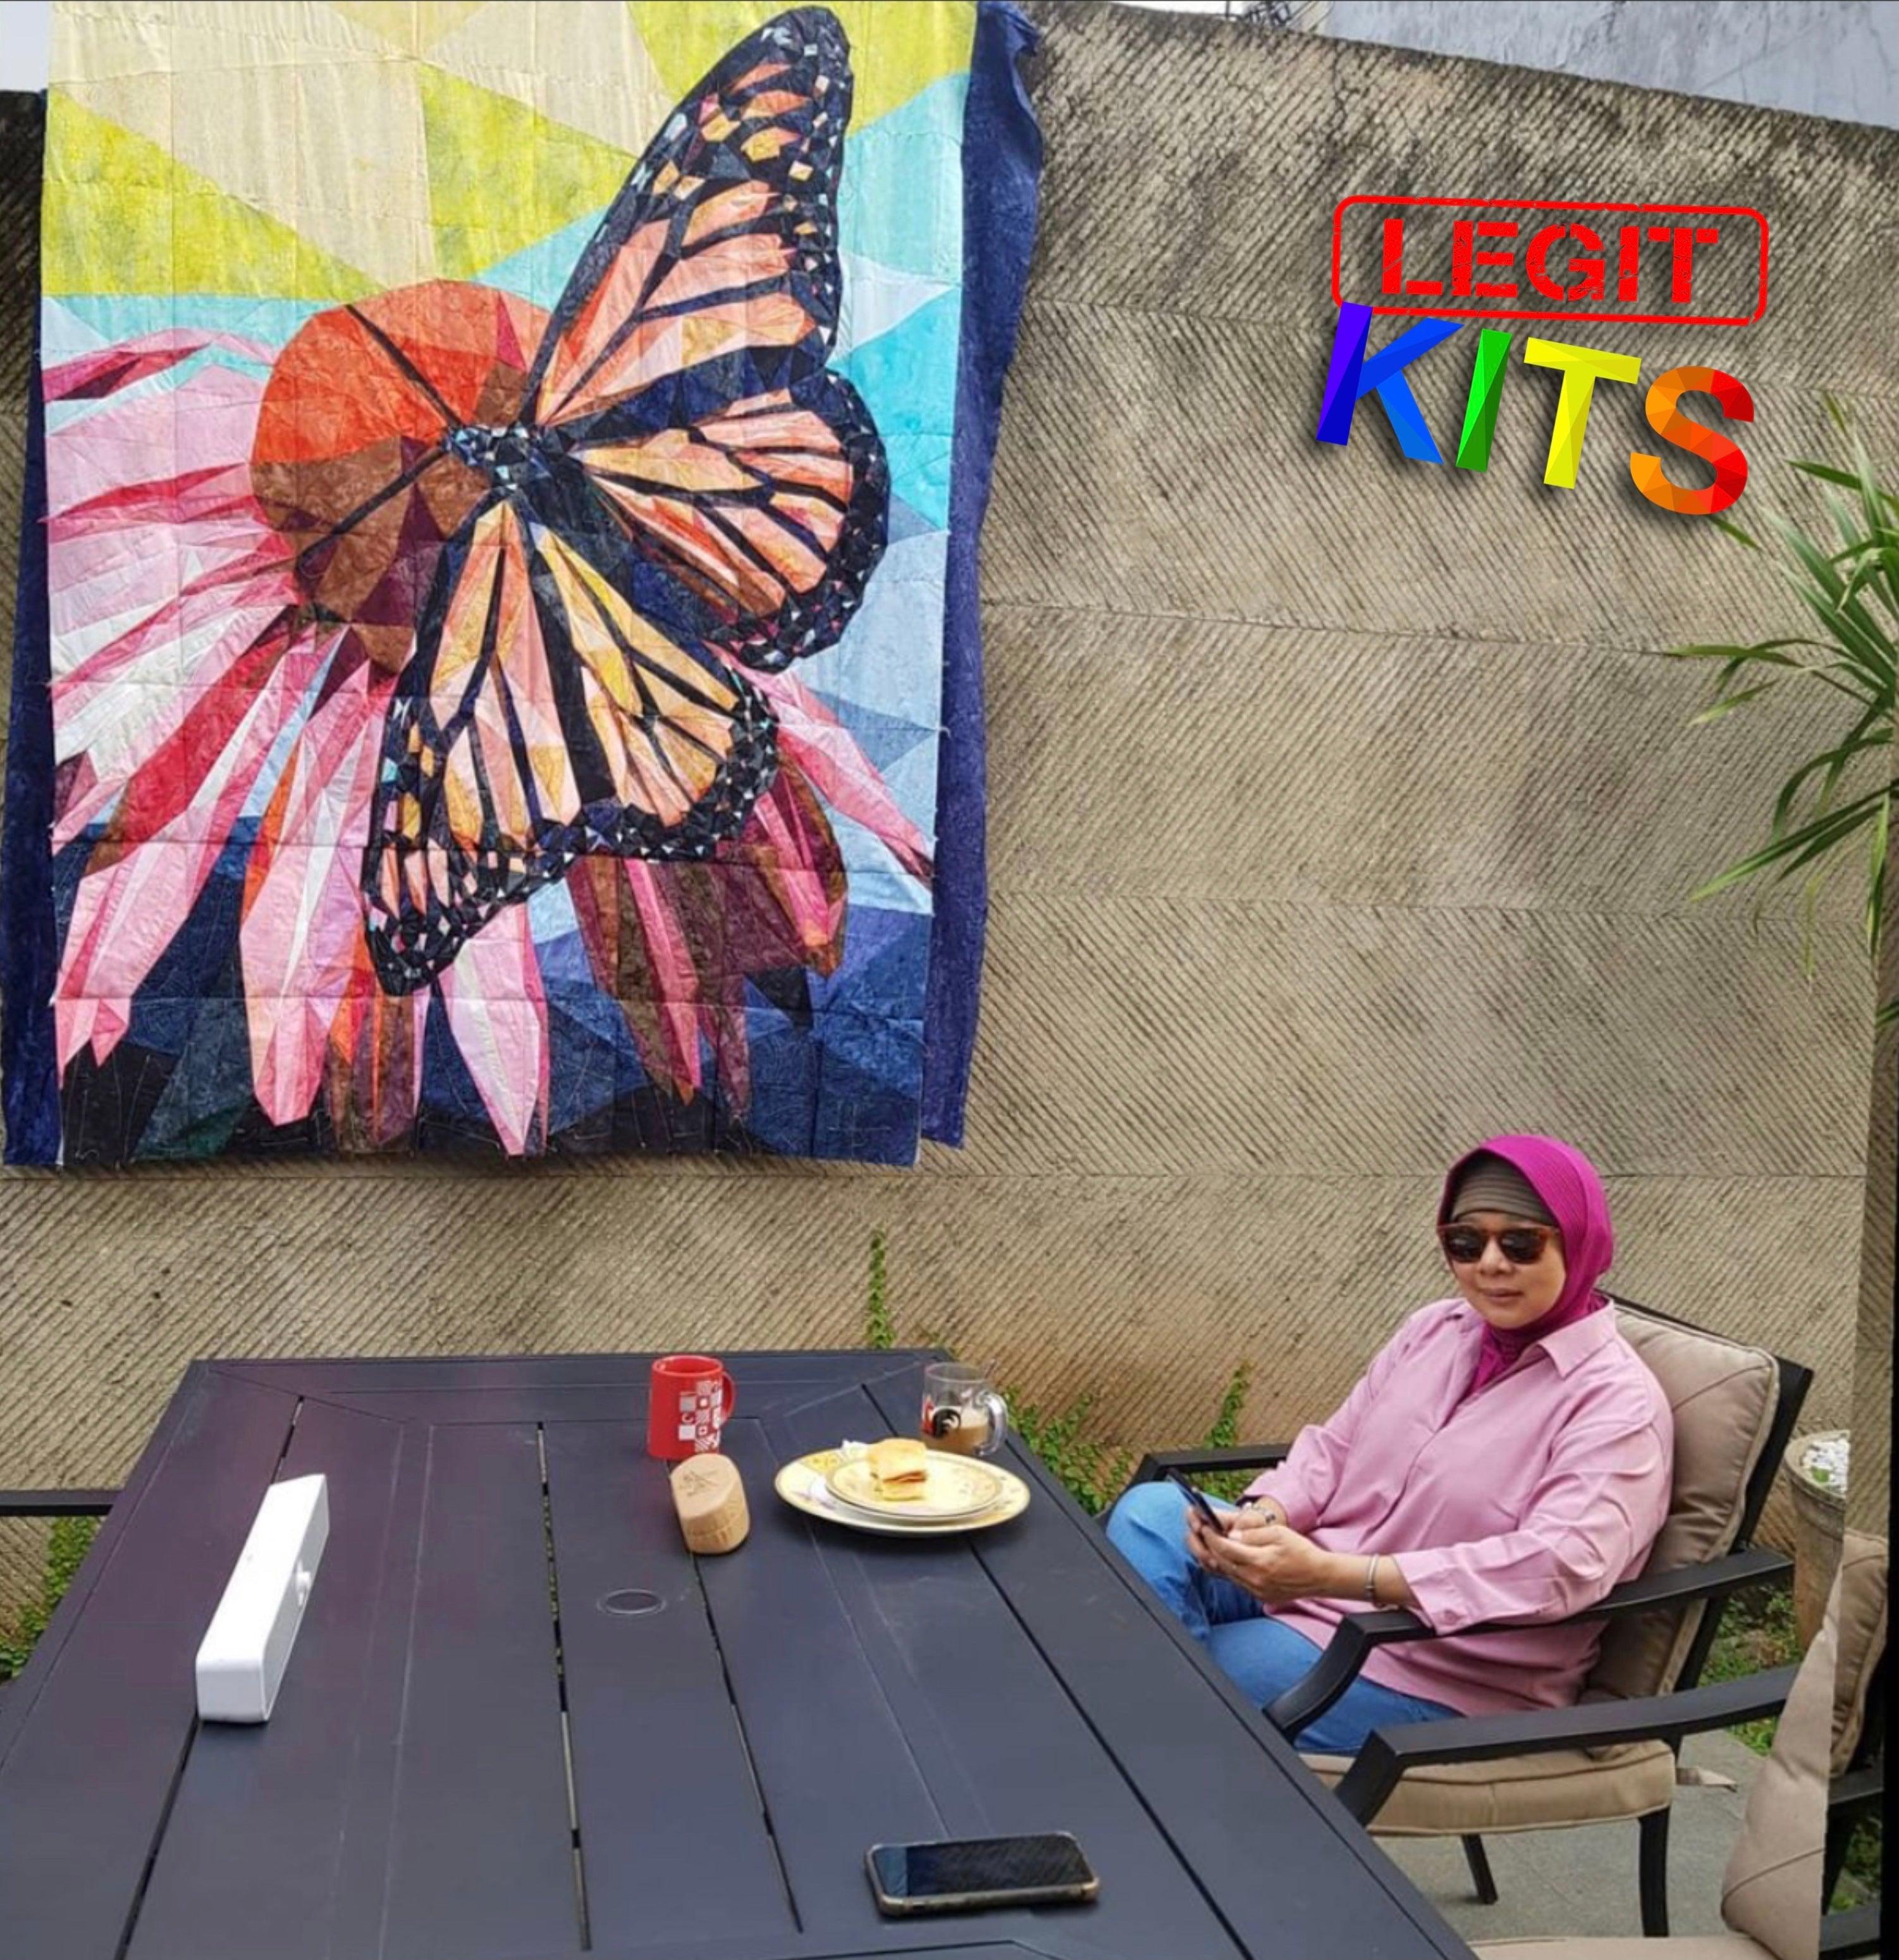 Legit Monarch Pattern-Legit Kits-My Favorite Quilt Store